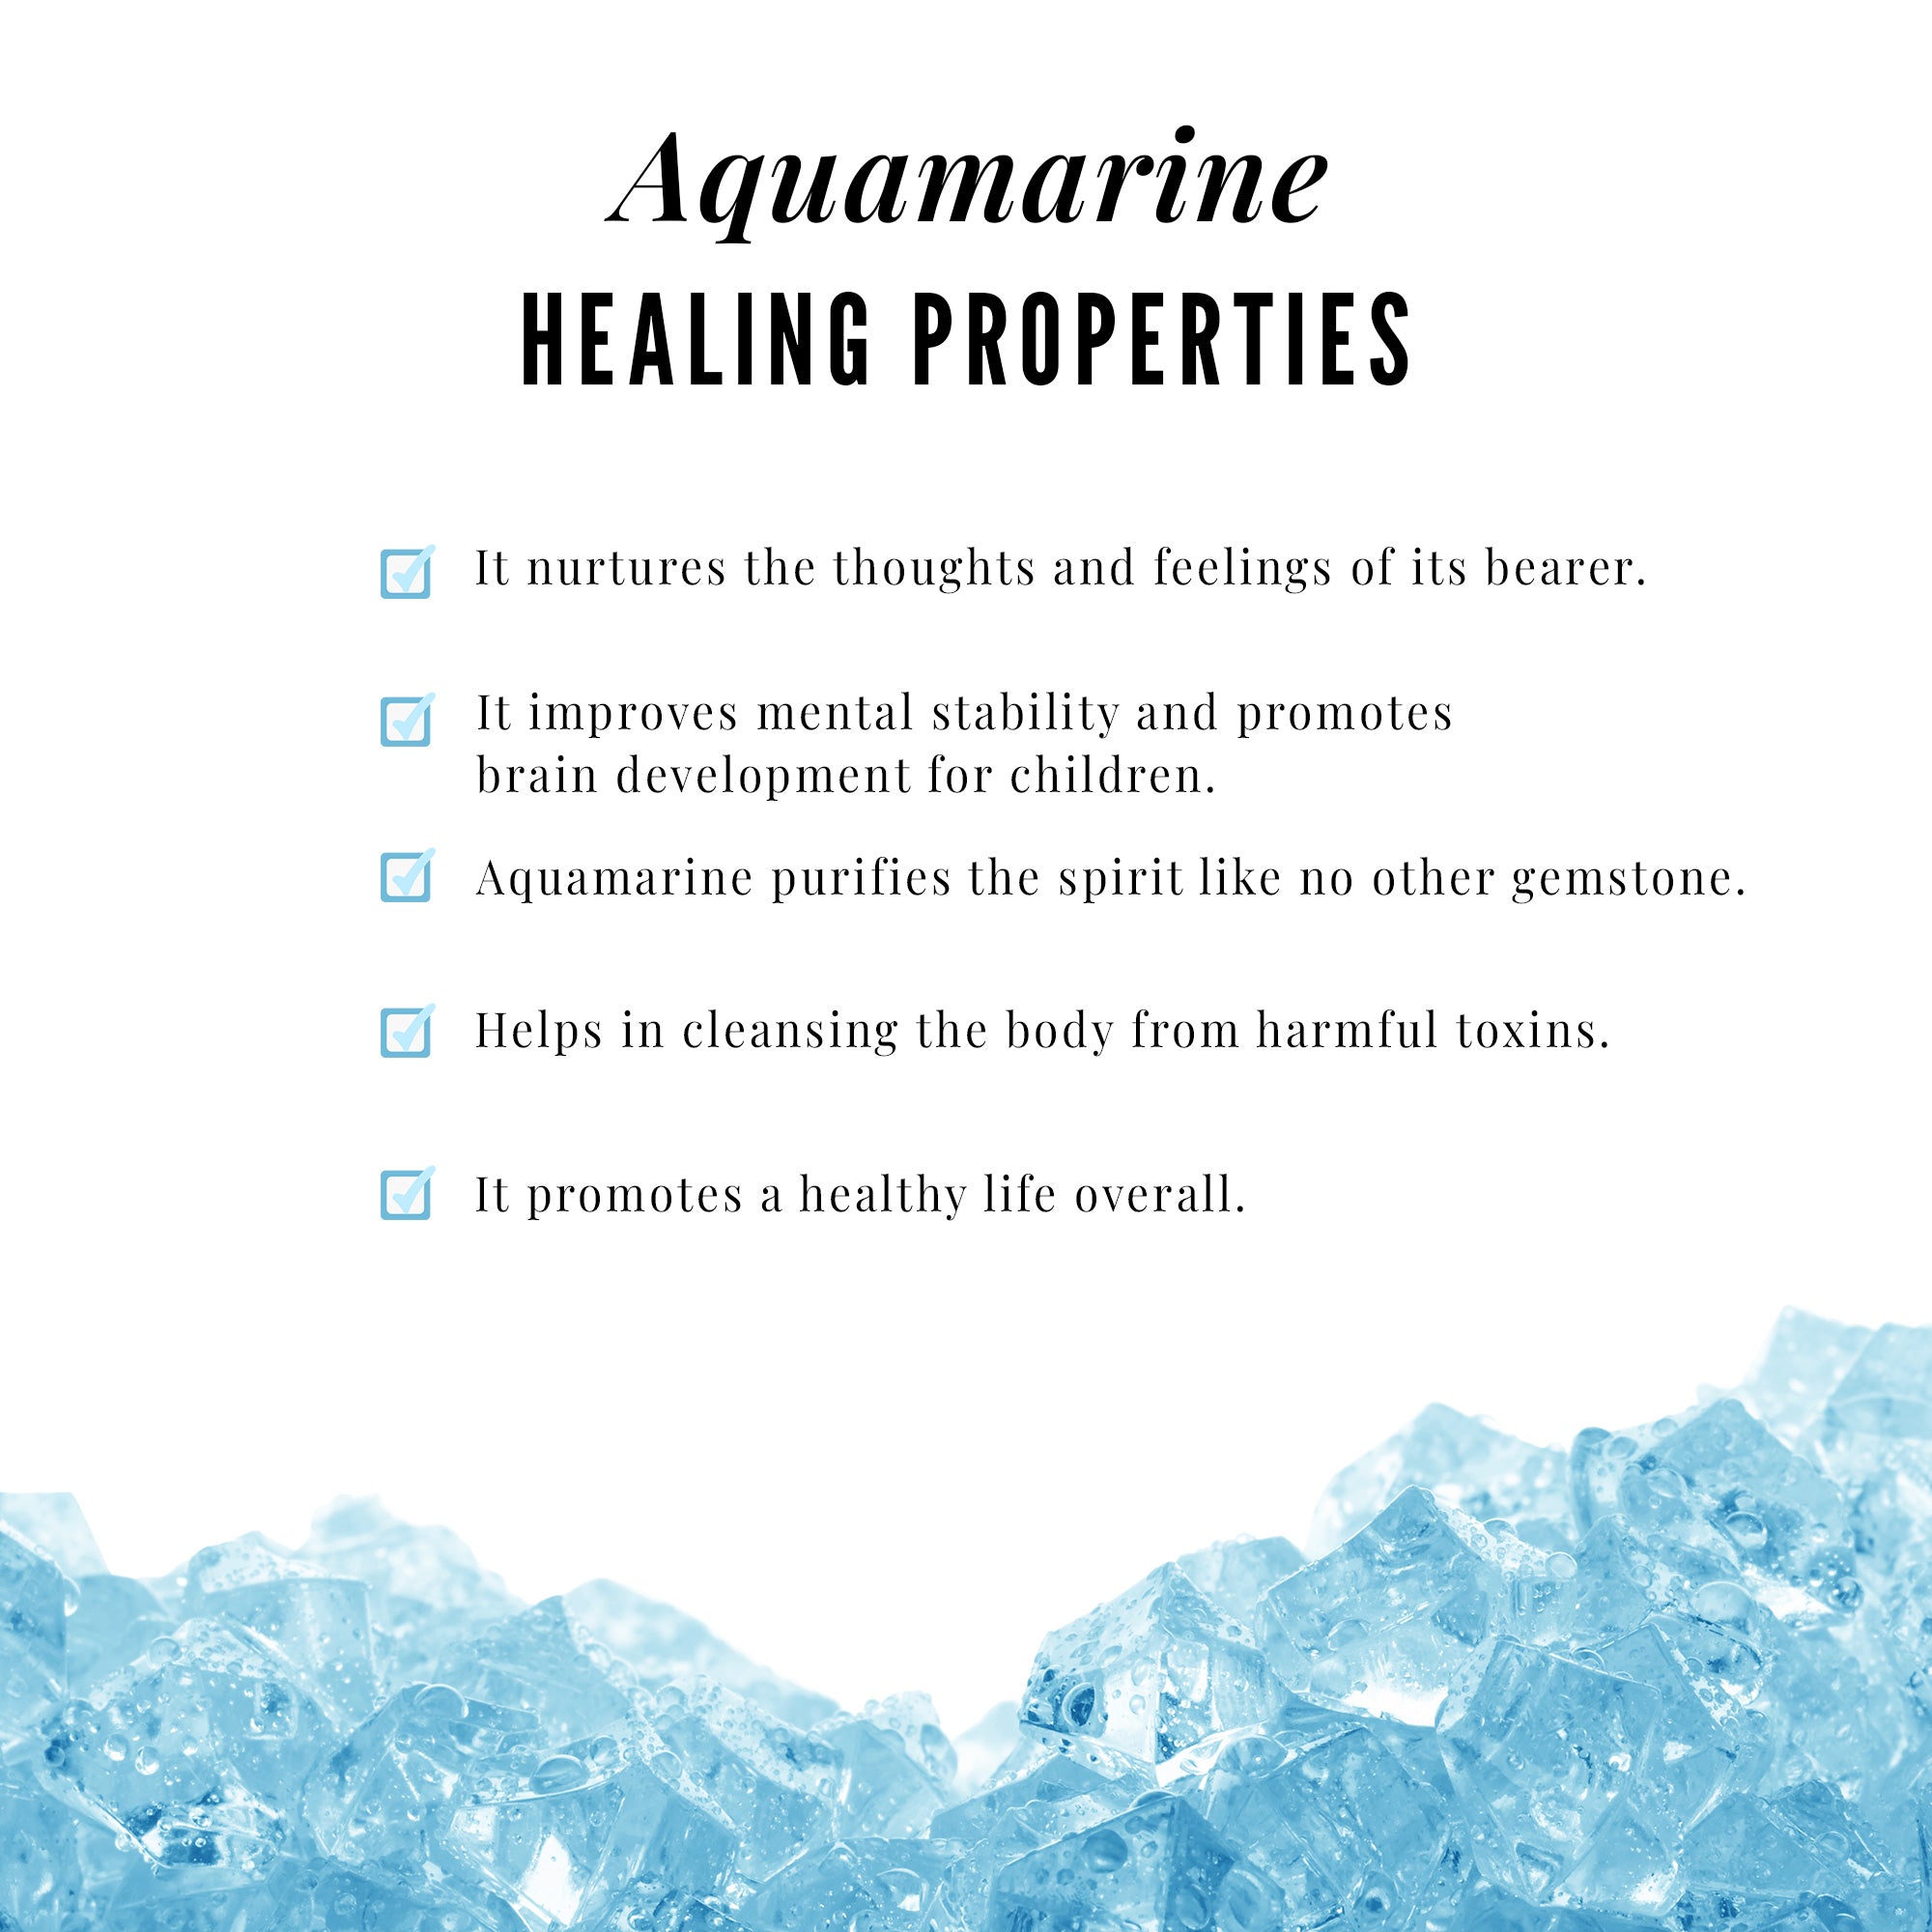 Heart Aquamarine and Diamond Ring Set Aquamarine - ( AAA ) - Quality - Rosec Jewels